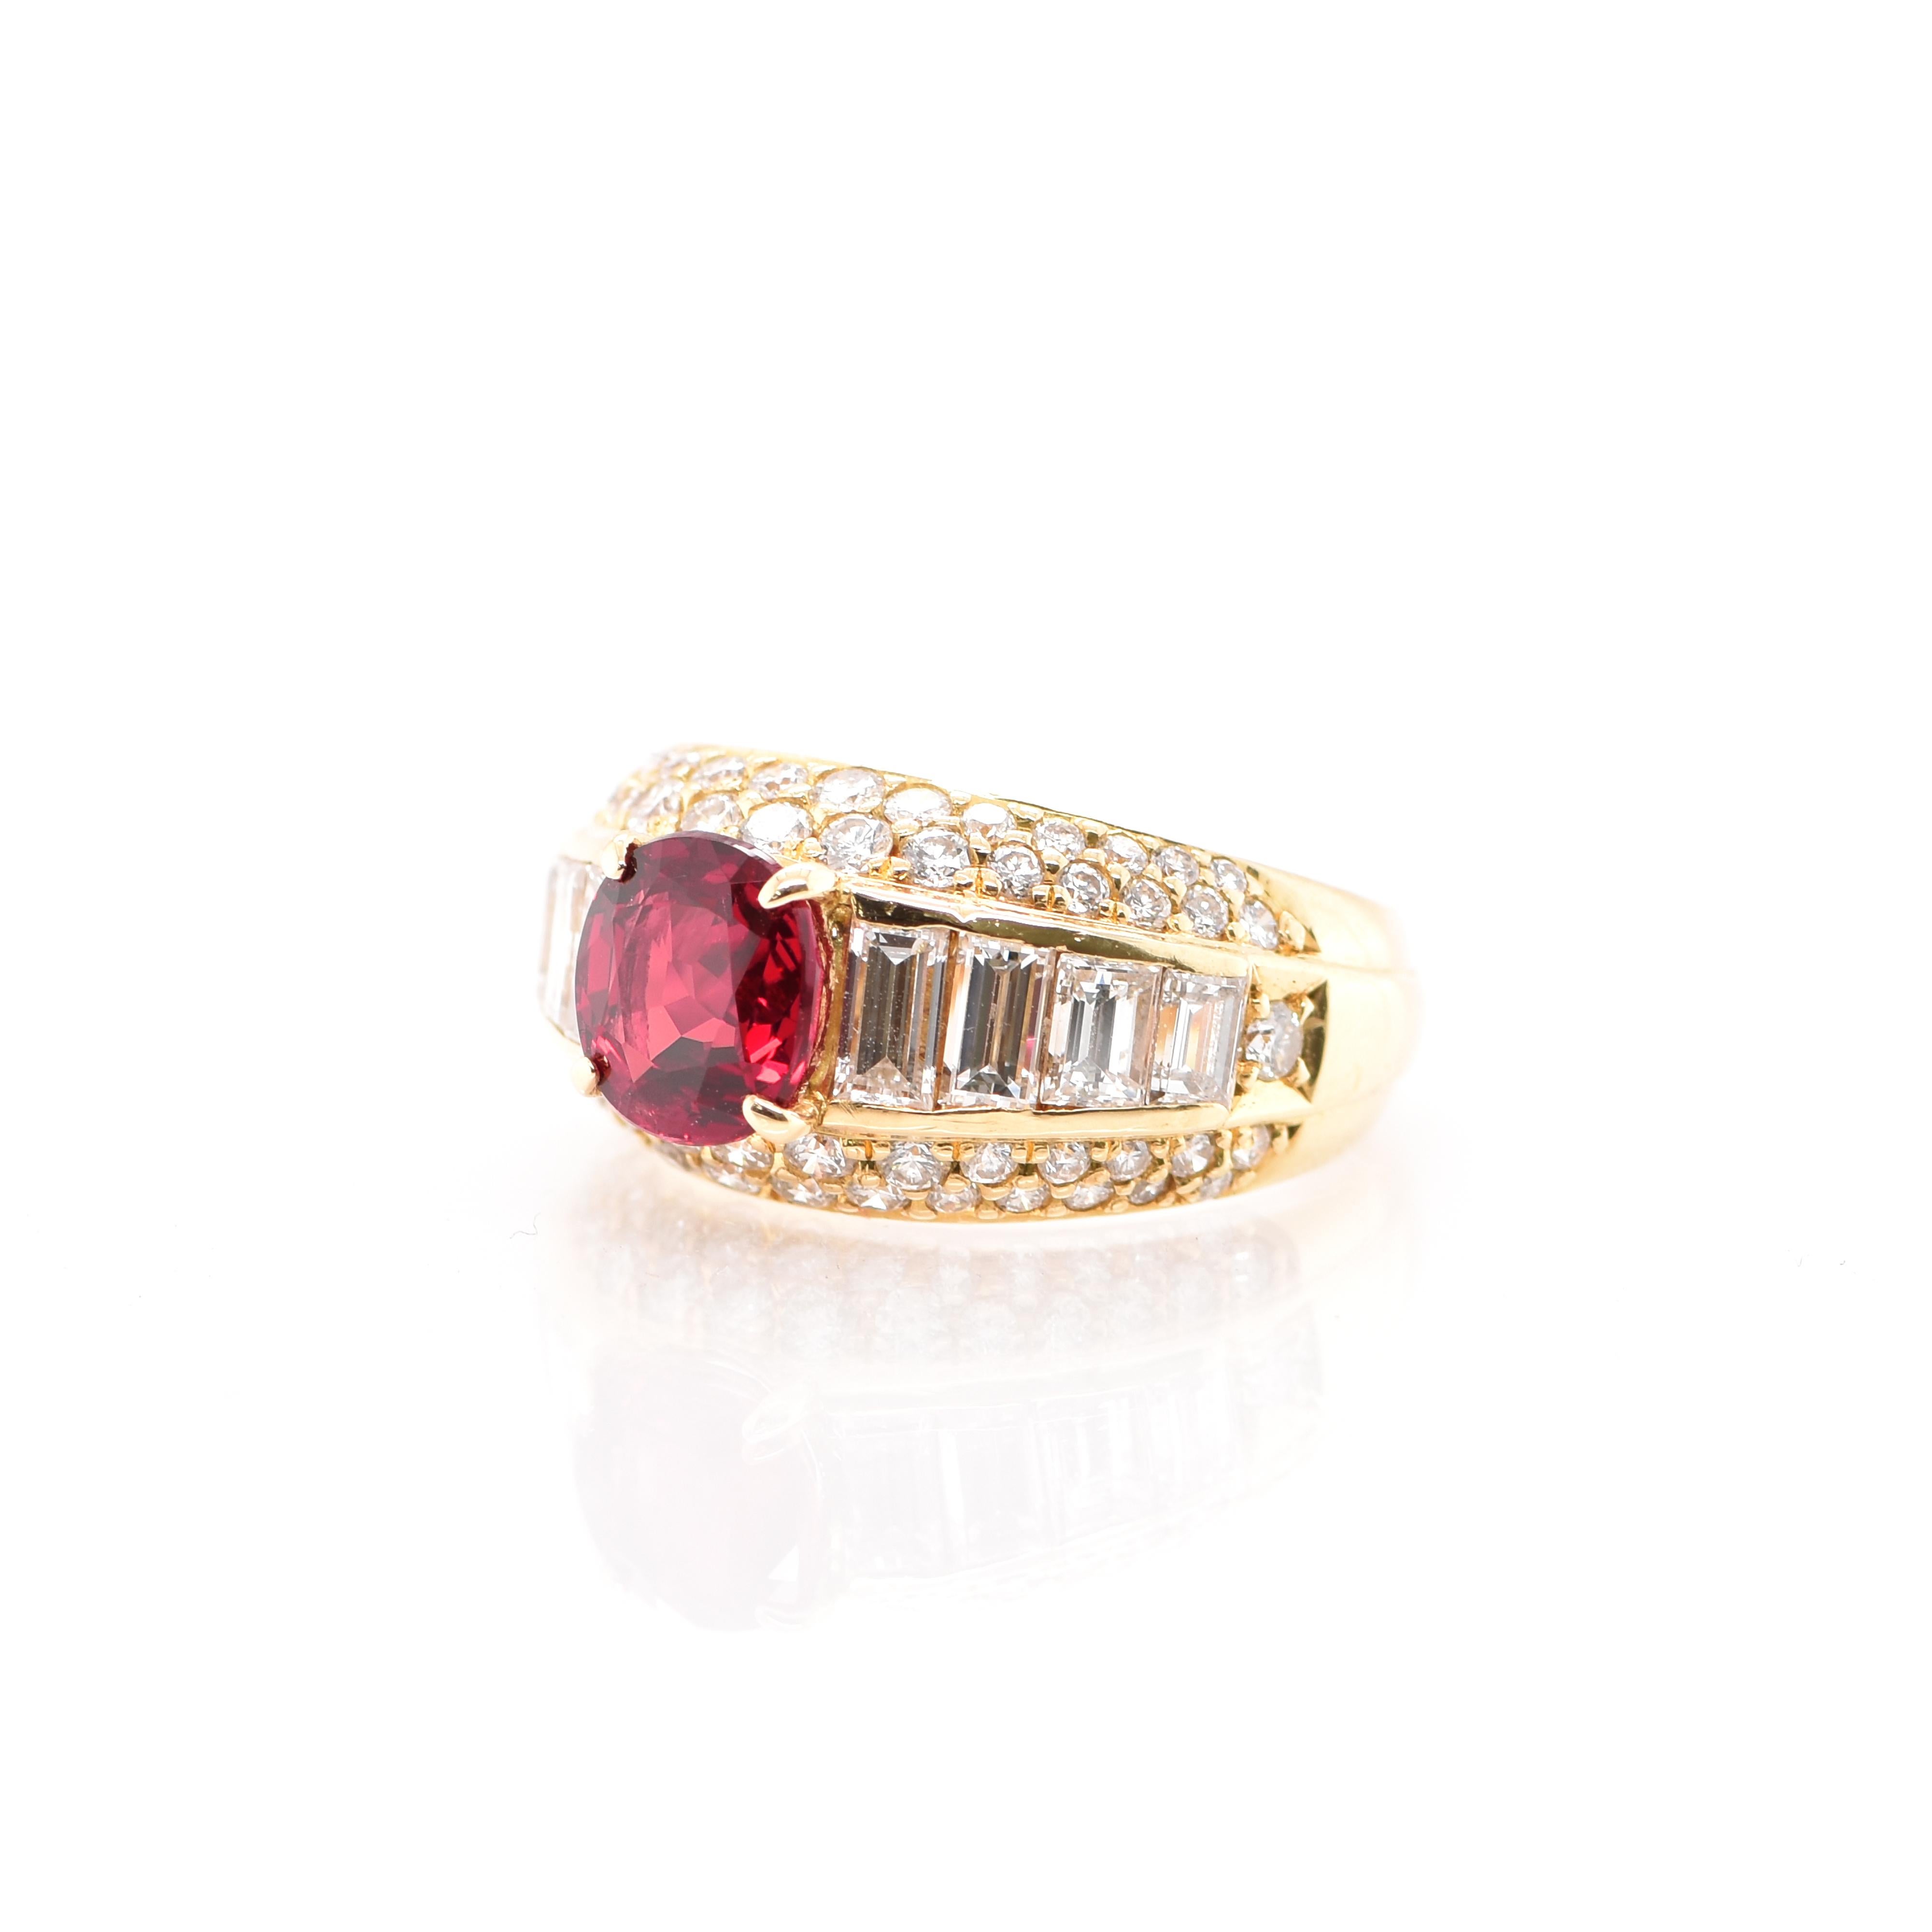 Modern 1.48 Carat Ruby and Diamond Band Ring Set in 18 Karat Gold